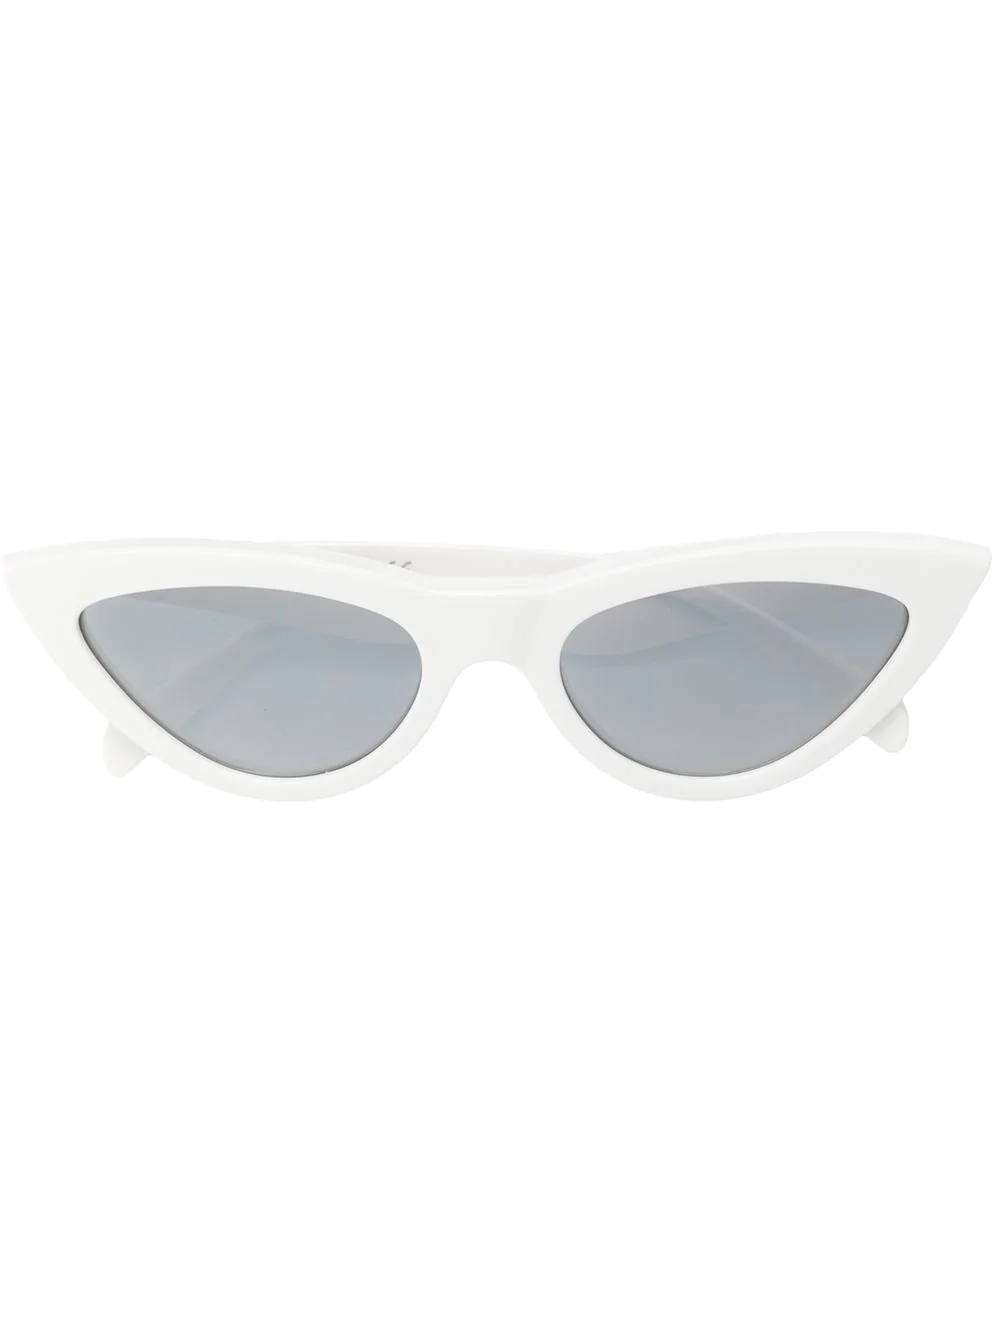 Celine White Cat Eye Sunglasses Sale Online, 60% OFF | www ...